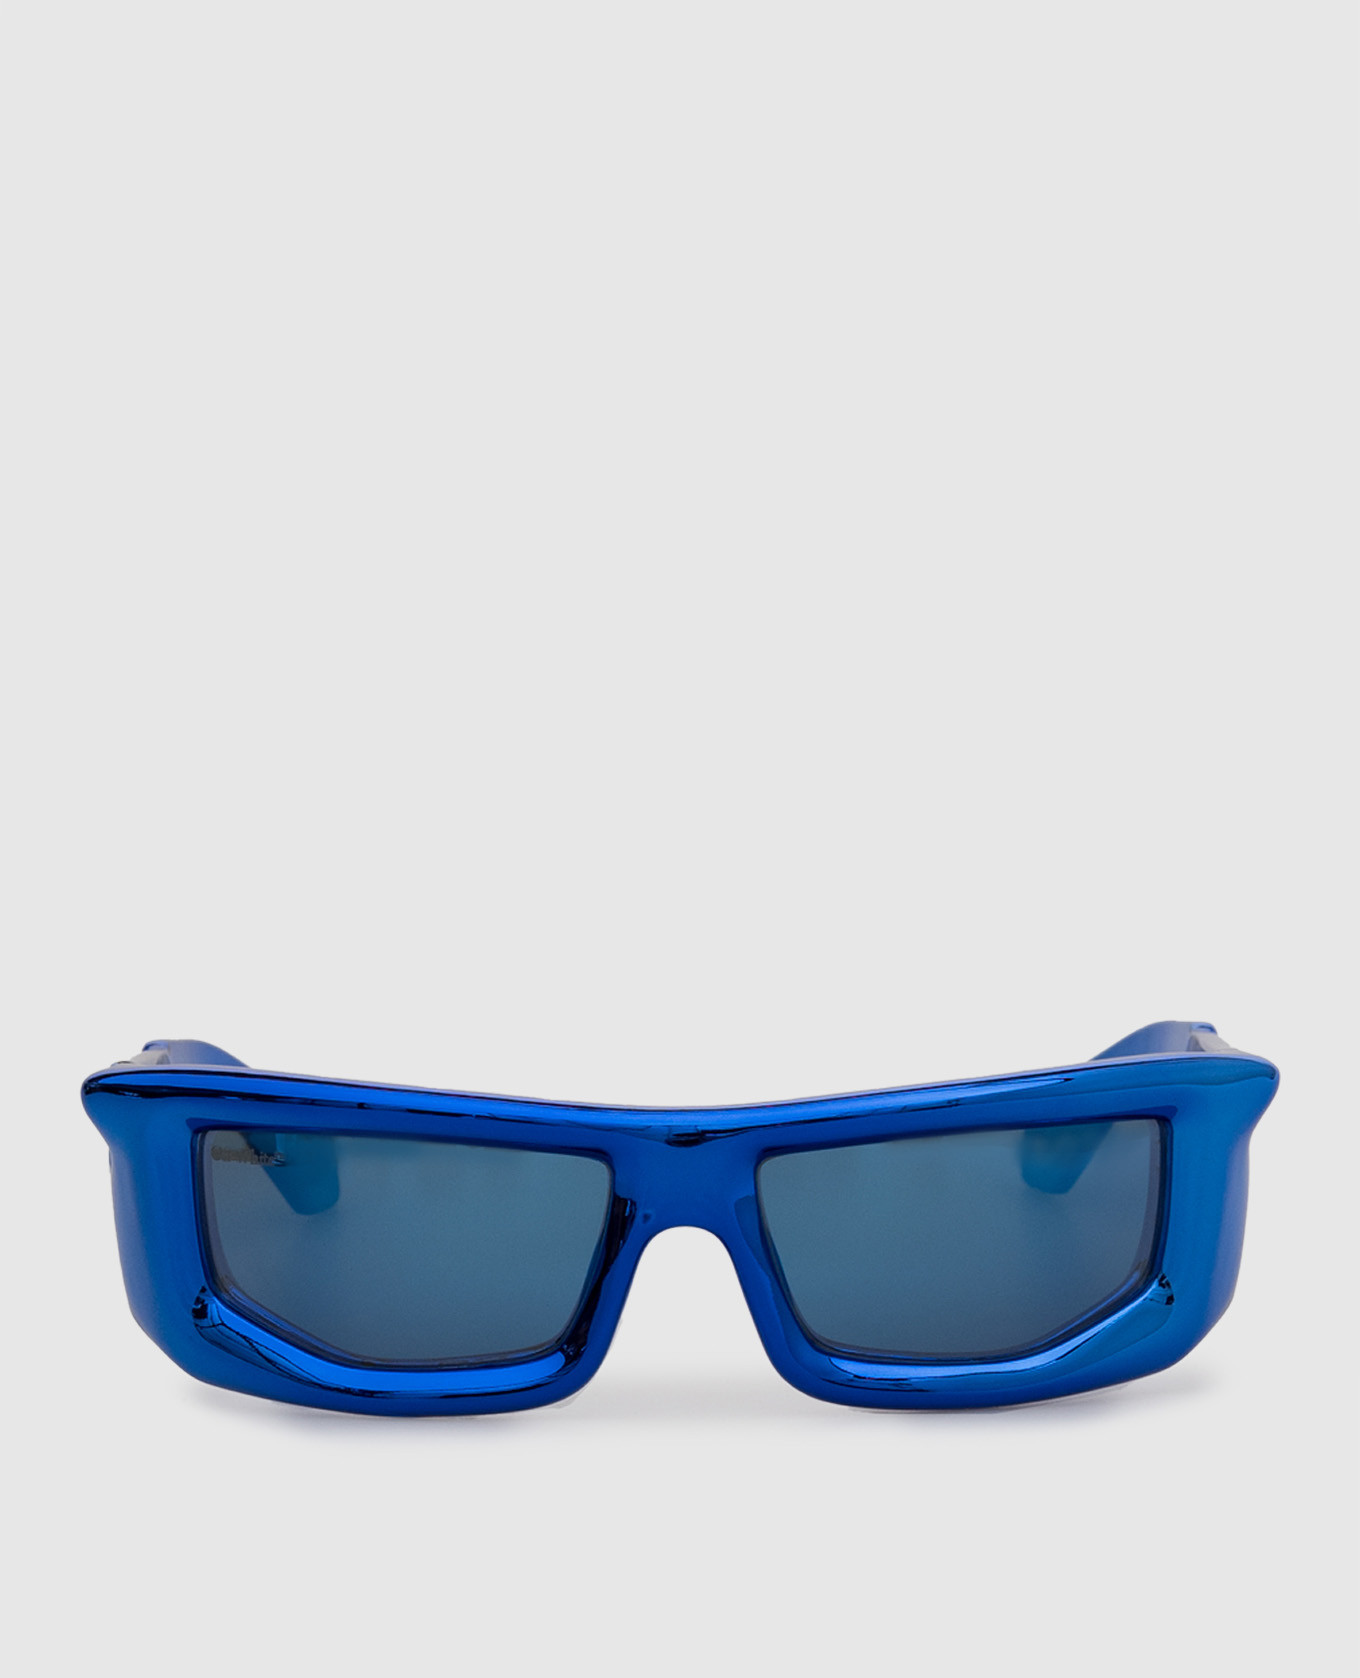 Okulary przeciwsłoneczne w kolorze wulkanicznego błękitu z metalicznym efektem